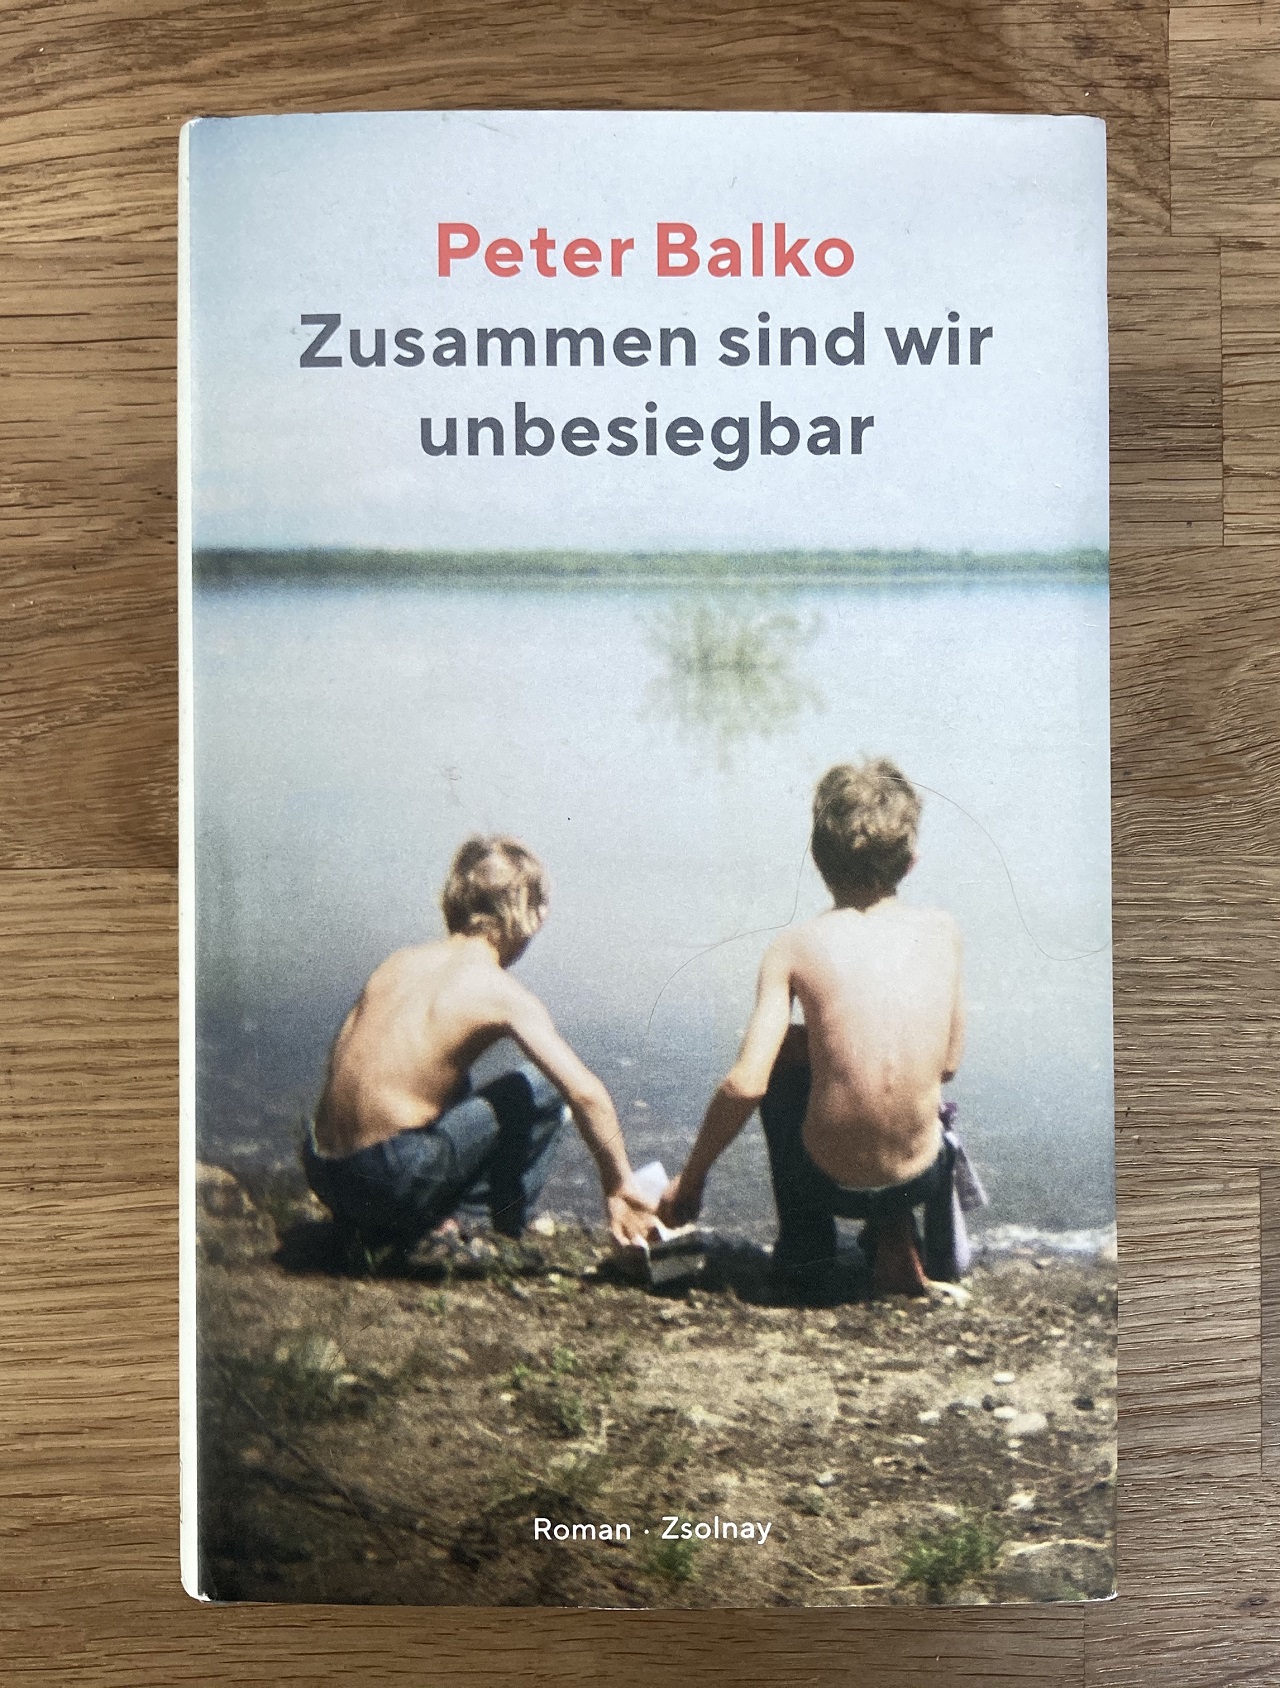 Zwei Buben spielen an einem Teich. Das ist am Buchumschlag zu "Zusammen sind wir unbesiegbar" von Peter Balko zu sehen.